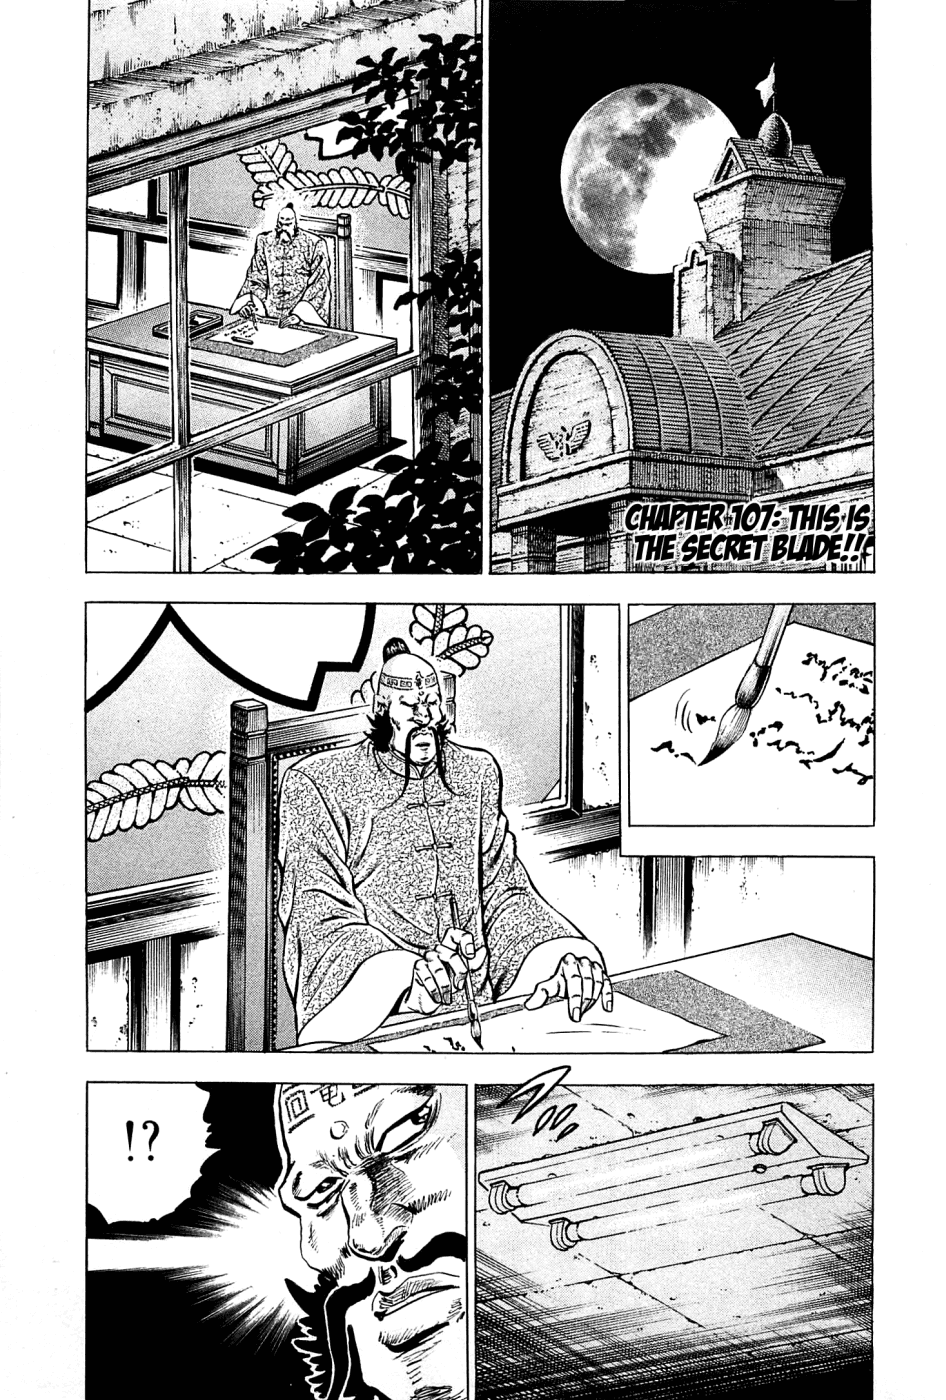 Akatsuki!! Otokojuku - Seinen yo, Taishi wo Idake Vol.14 Ch.107